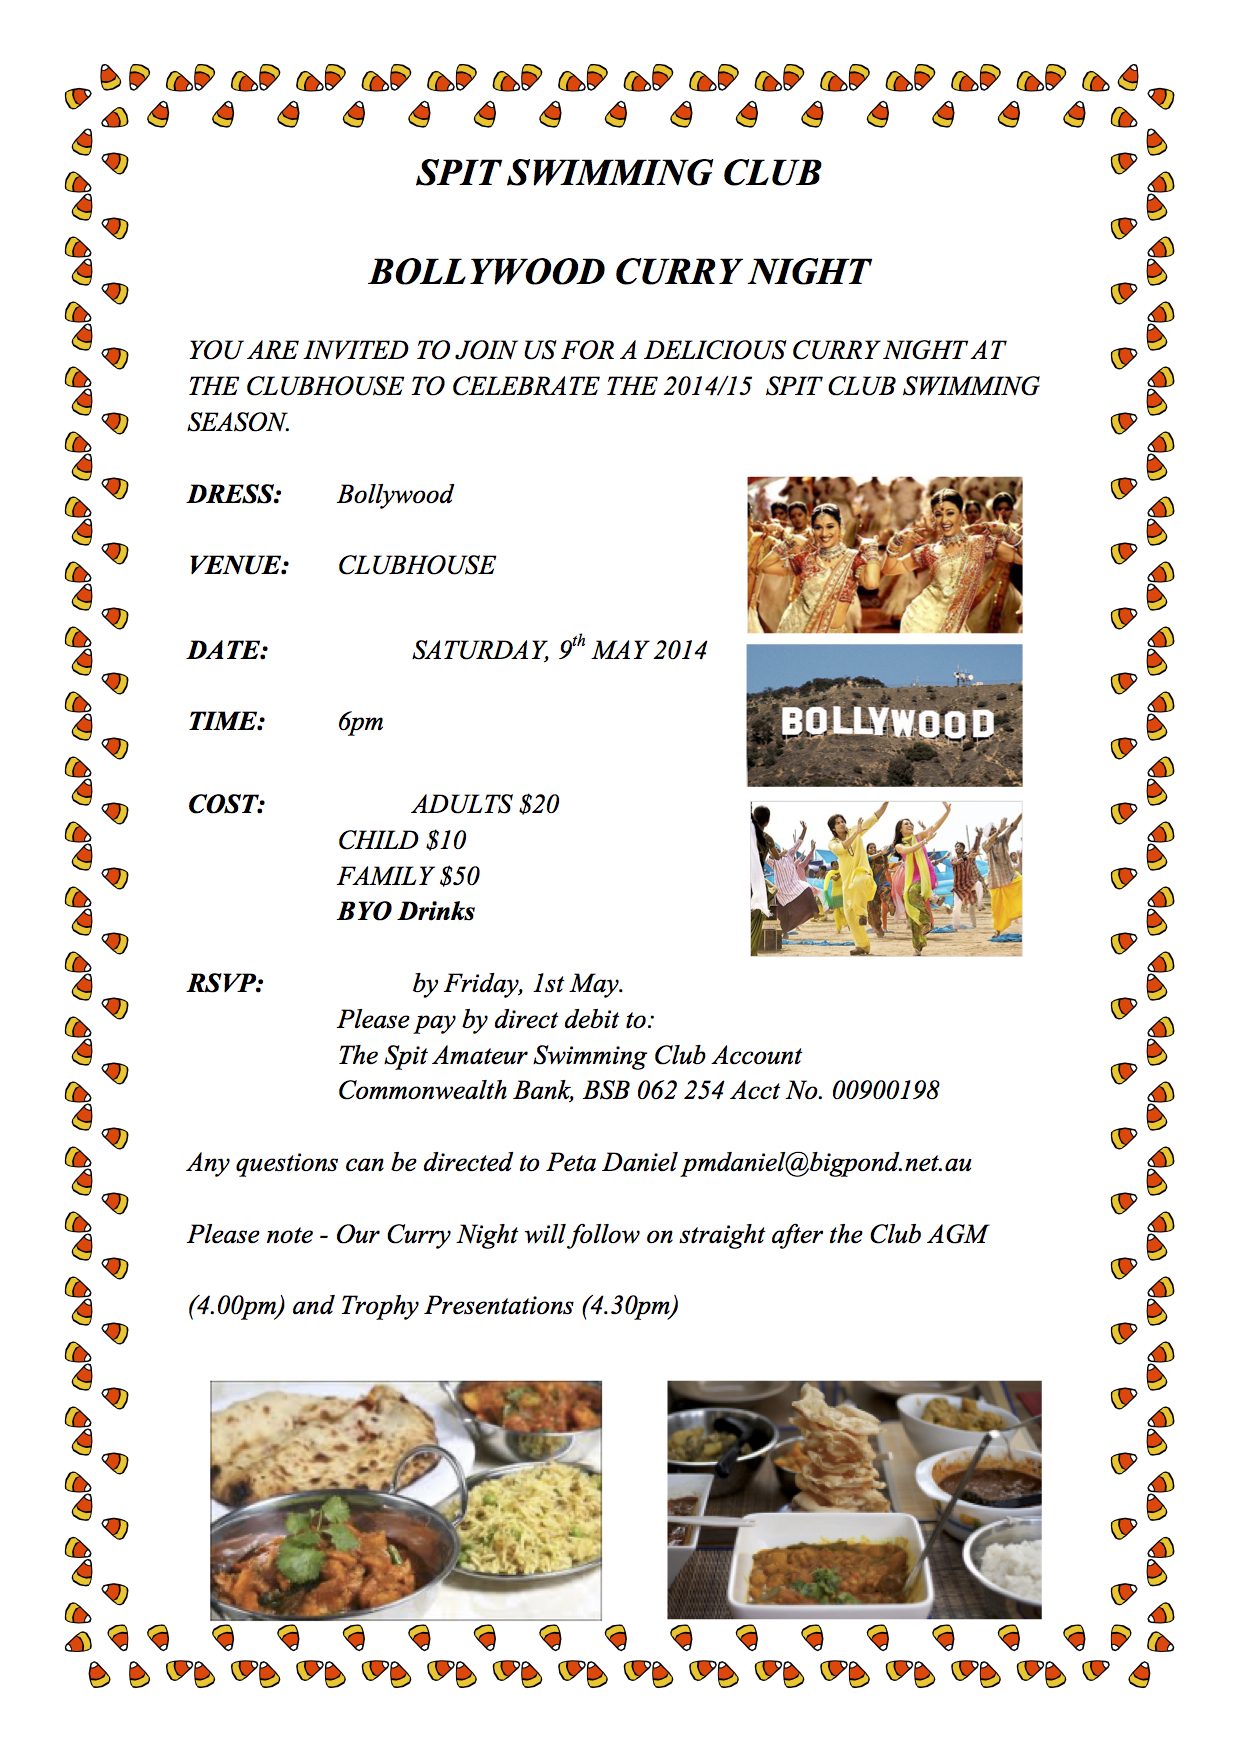 Spit Club Bollywood Curry Night Invitation